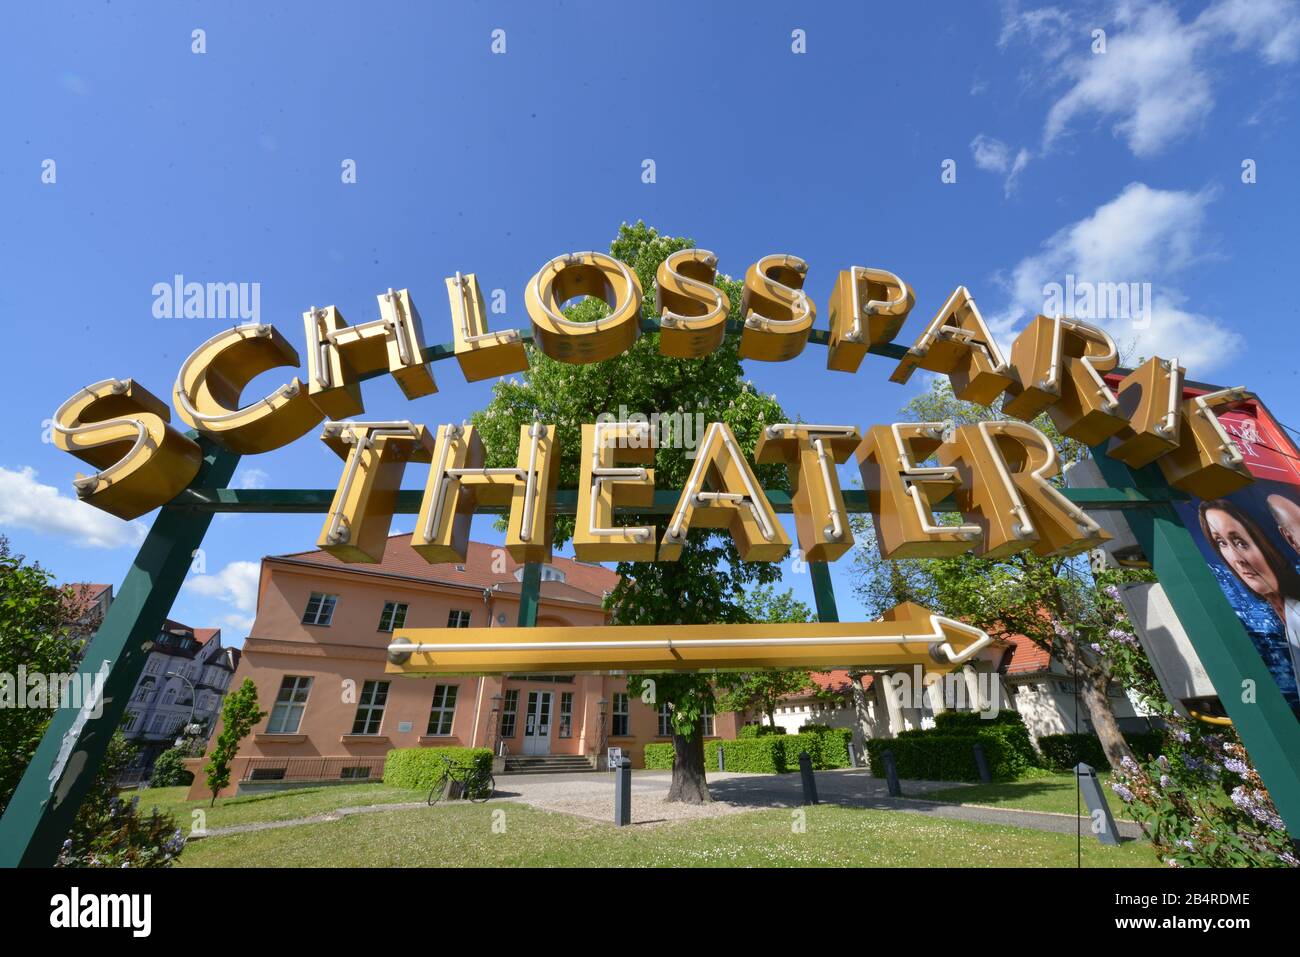 Schlossparktheater, Schlossstrasse, Steglitz, Berlin, Deutschland Stock Photo